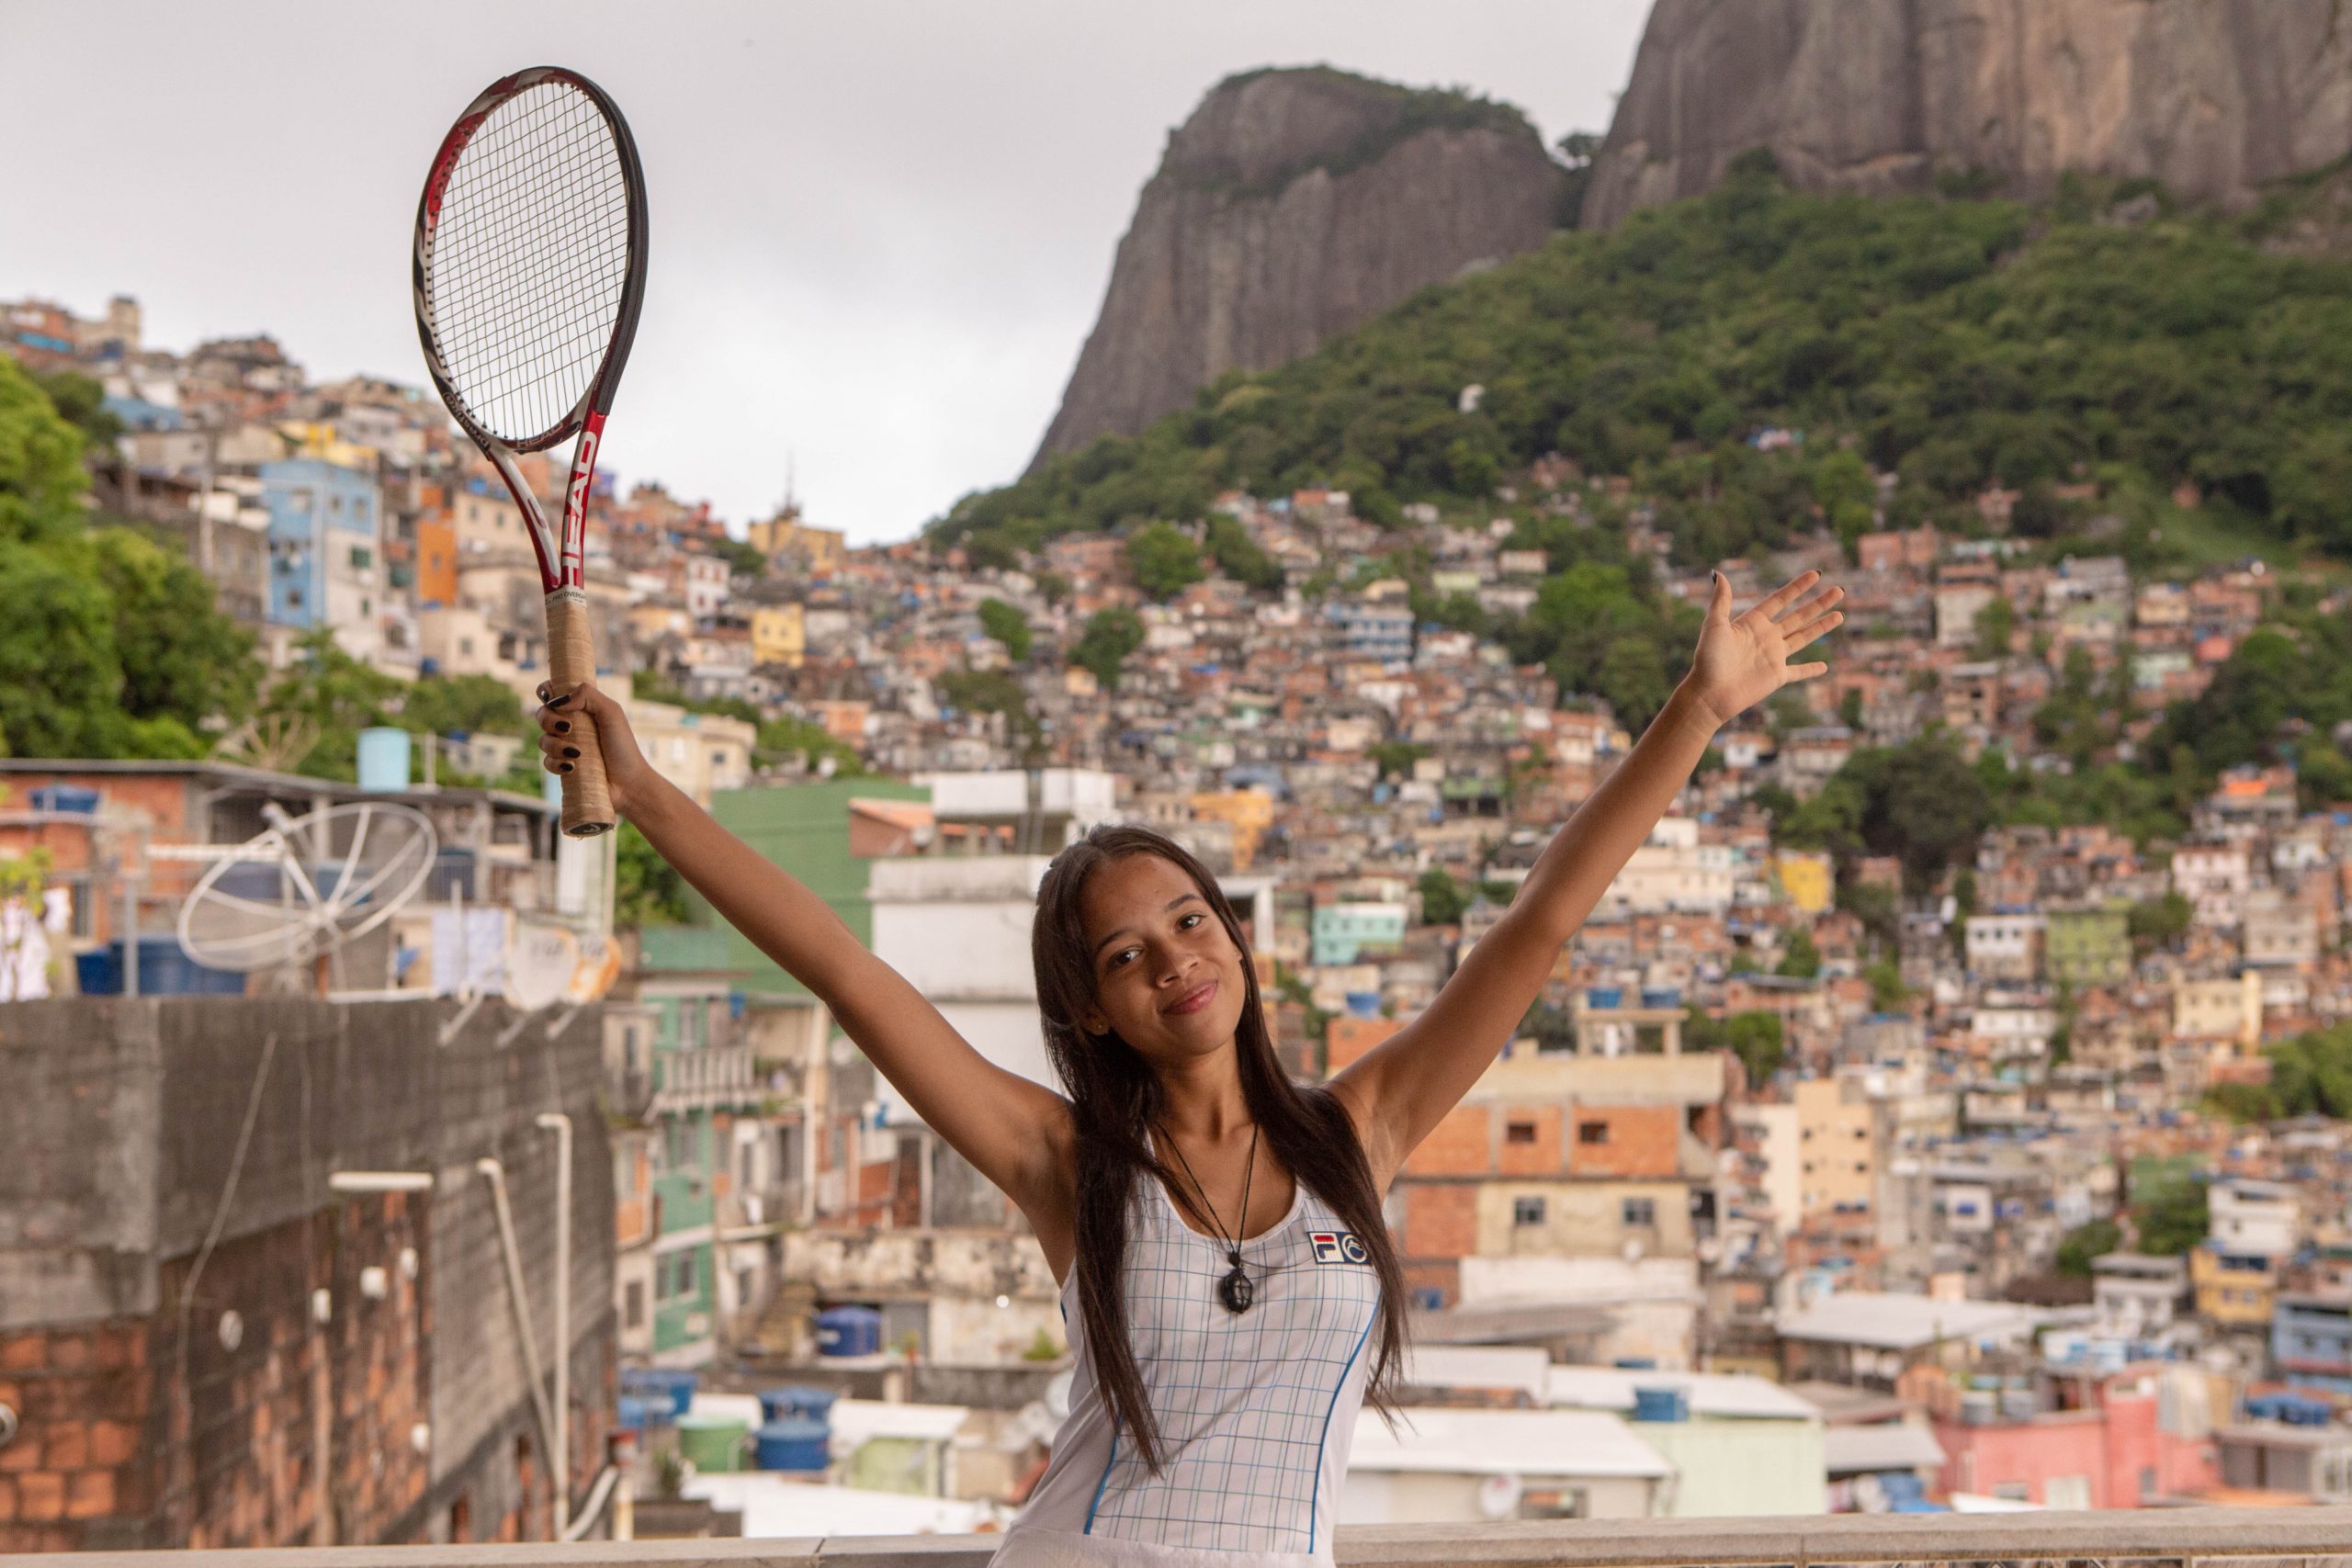 Esporte é vida: Copagaz apoia projeto esportivo na Rocinha